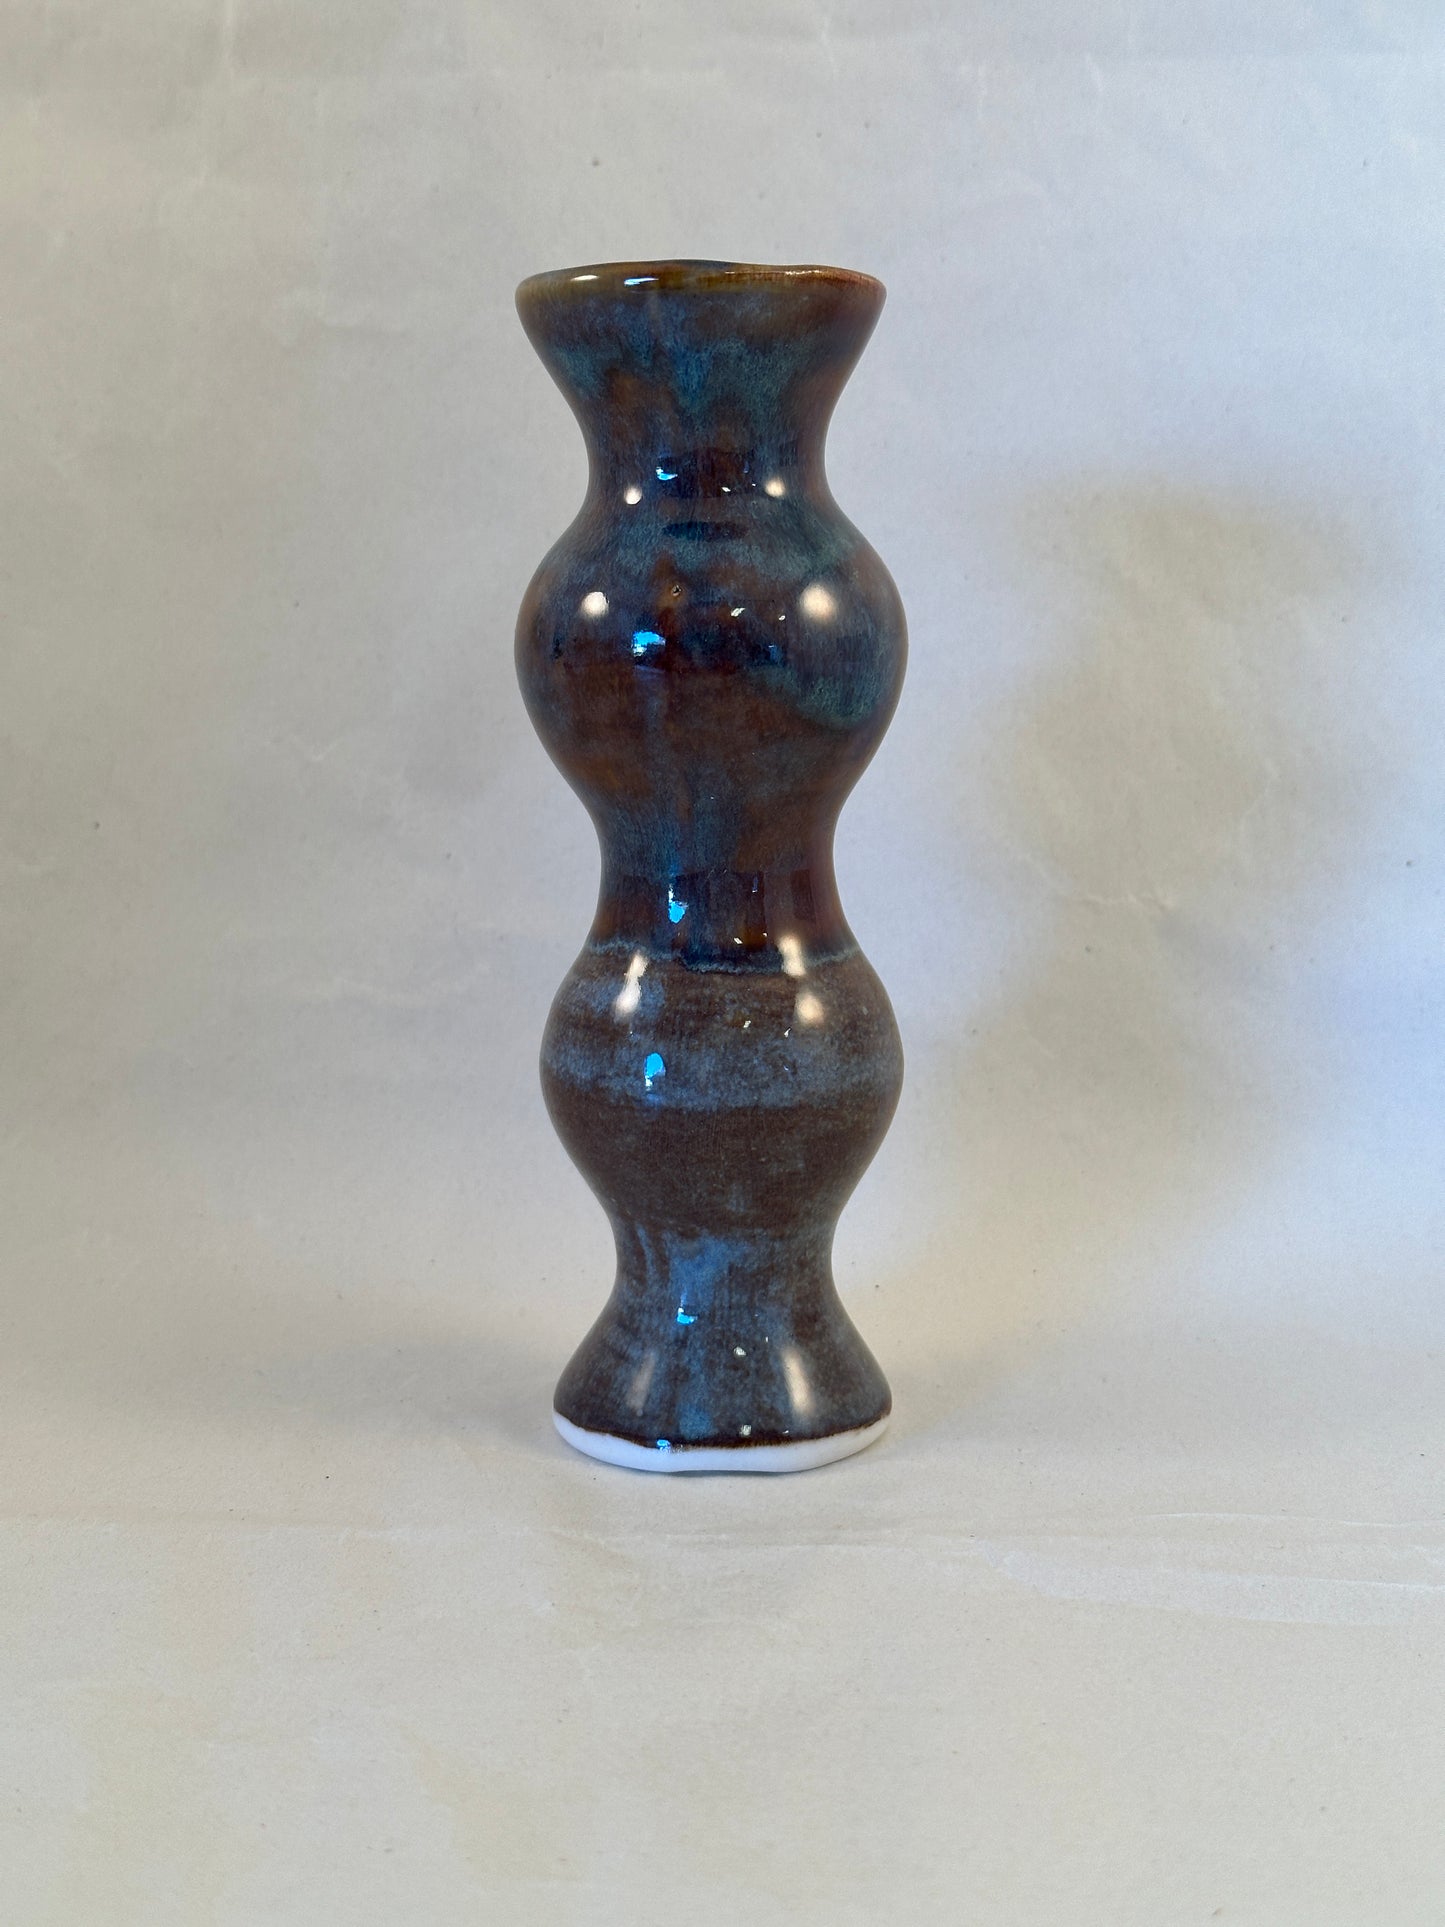 Small bud vase